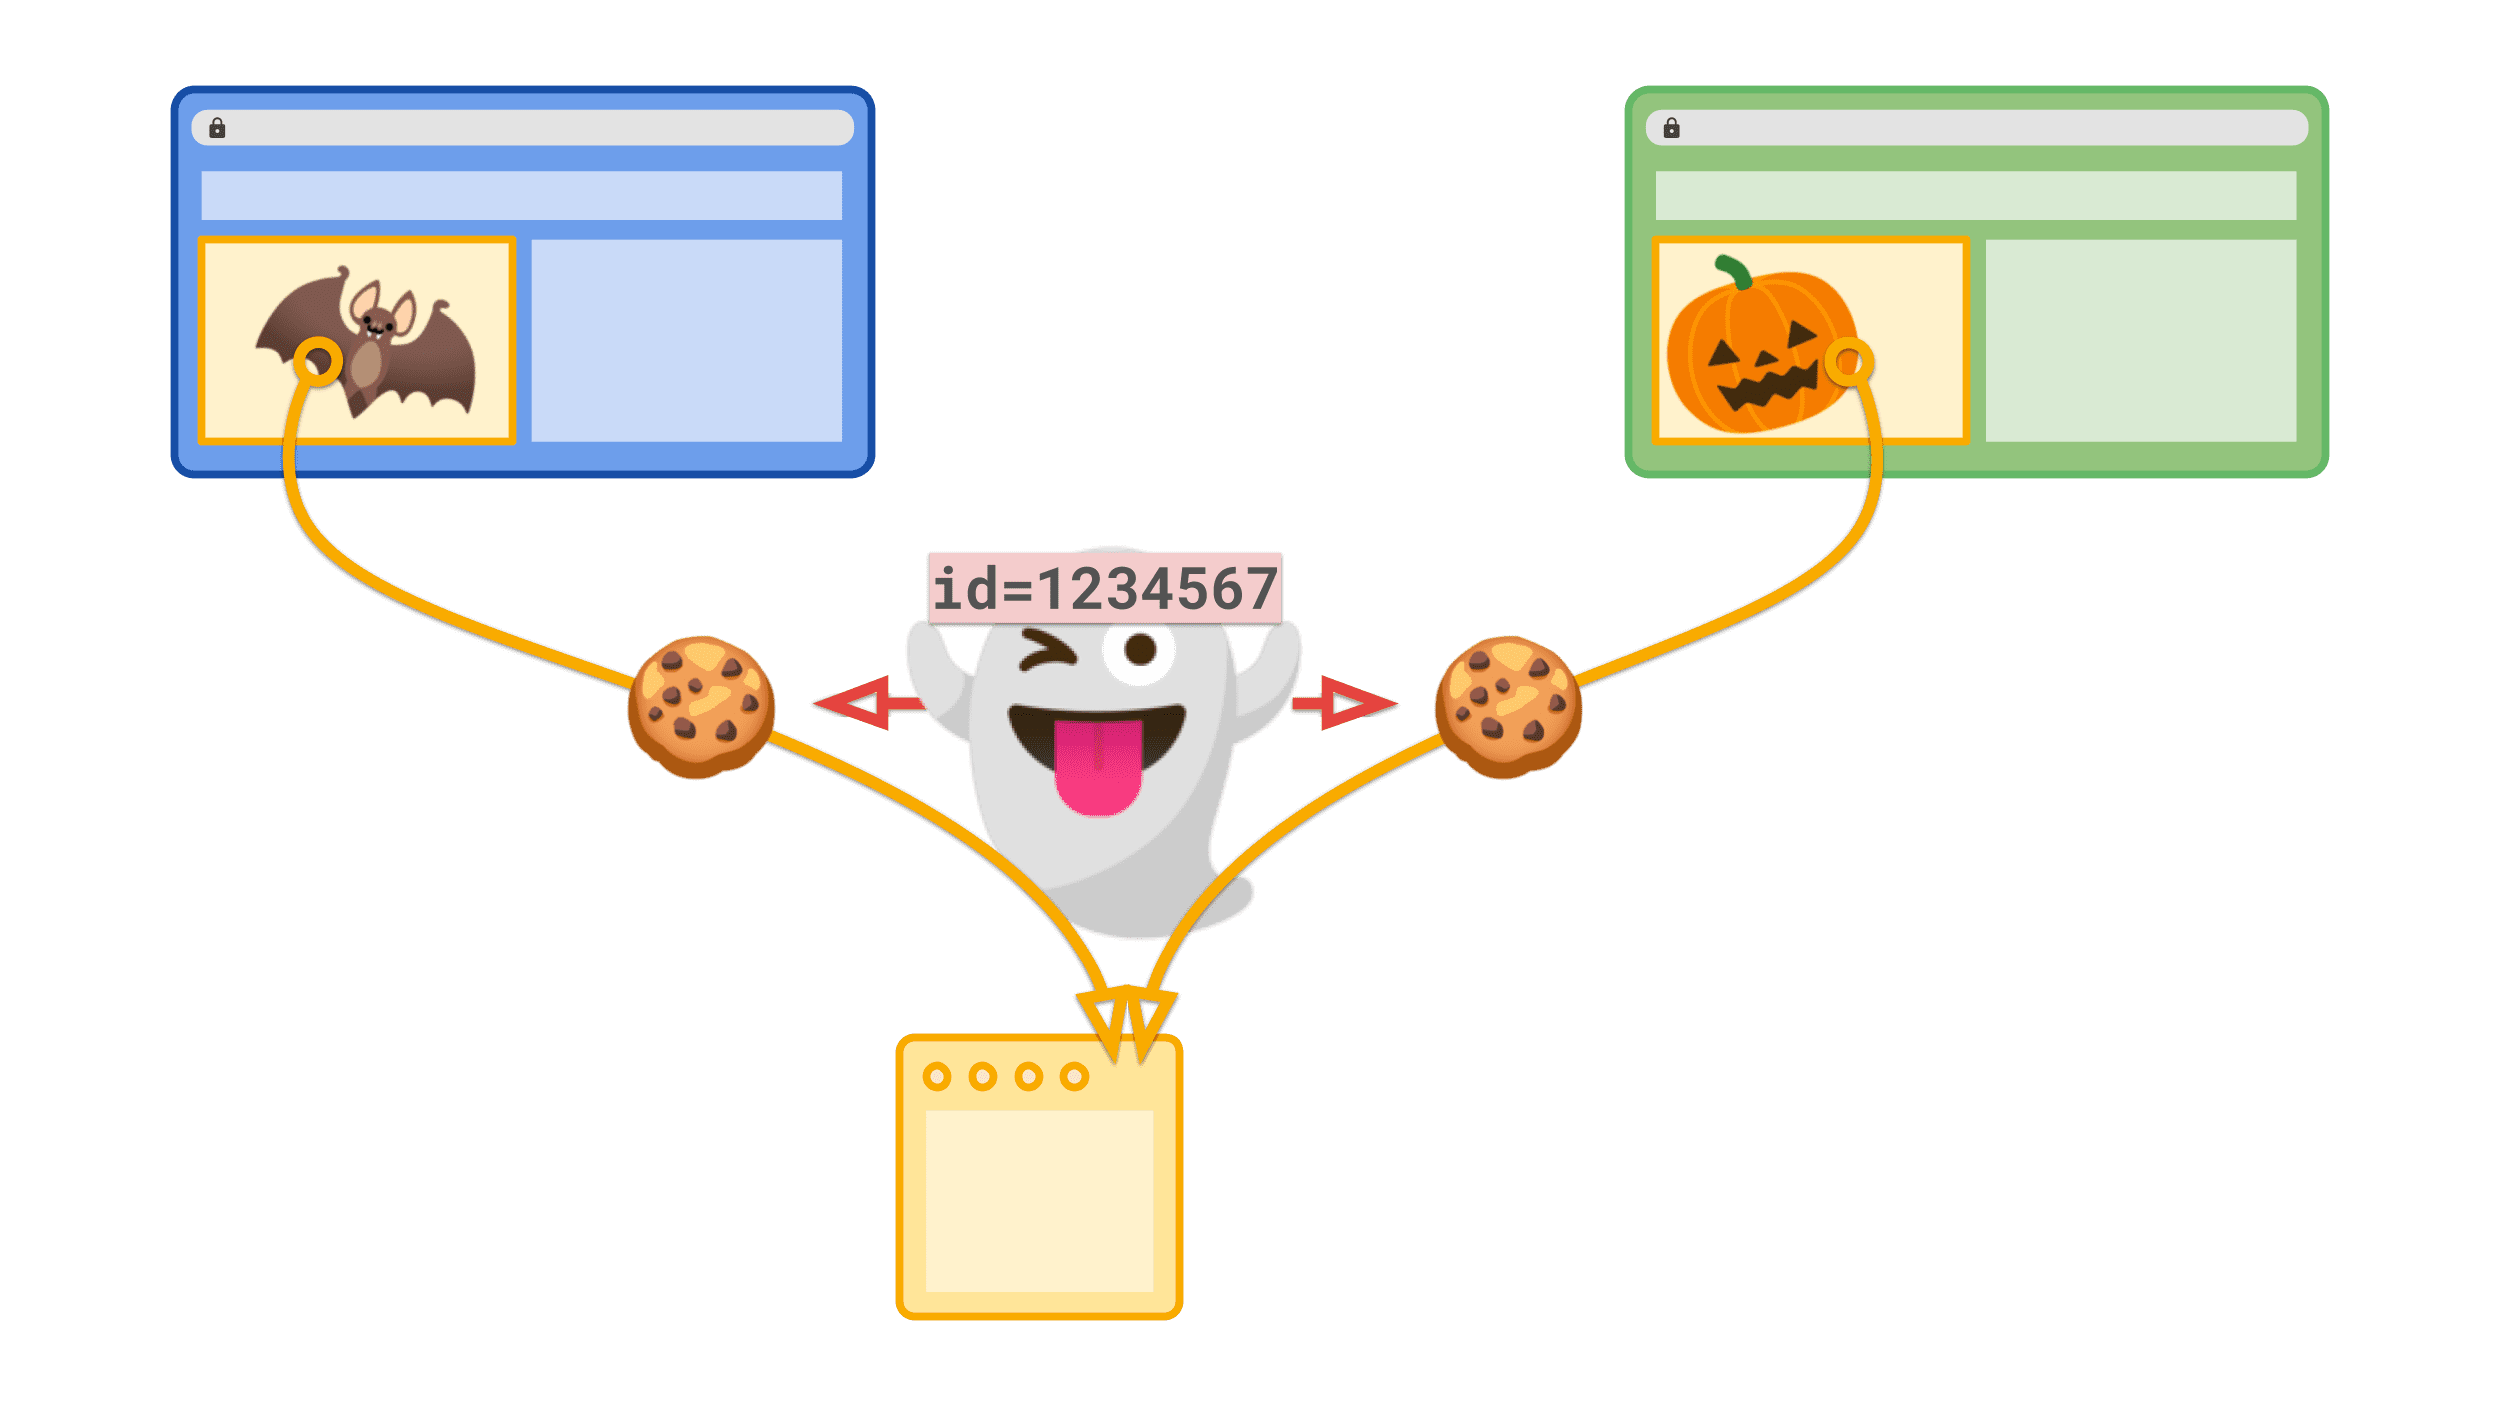 一意の ID が設定されたサードパーティ Cookie です。これにより、サードパーティ サイトがウェブ上でユーザーをトラッキングできるようになります。